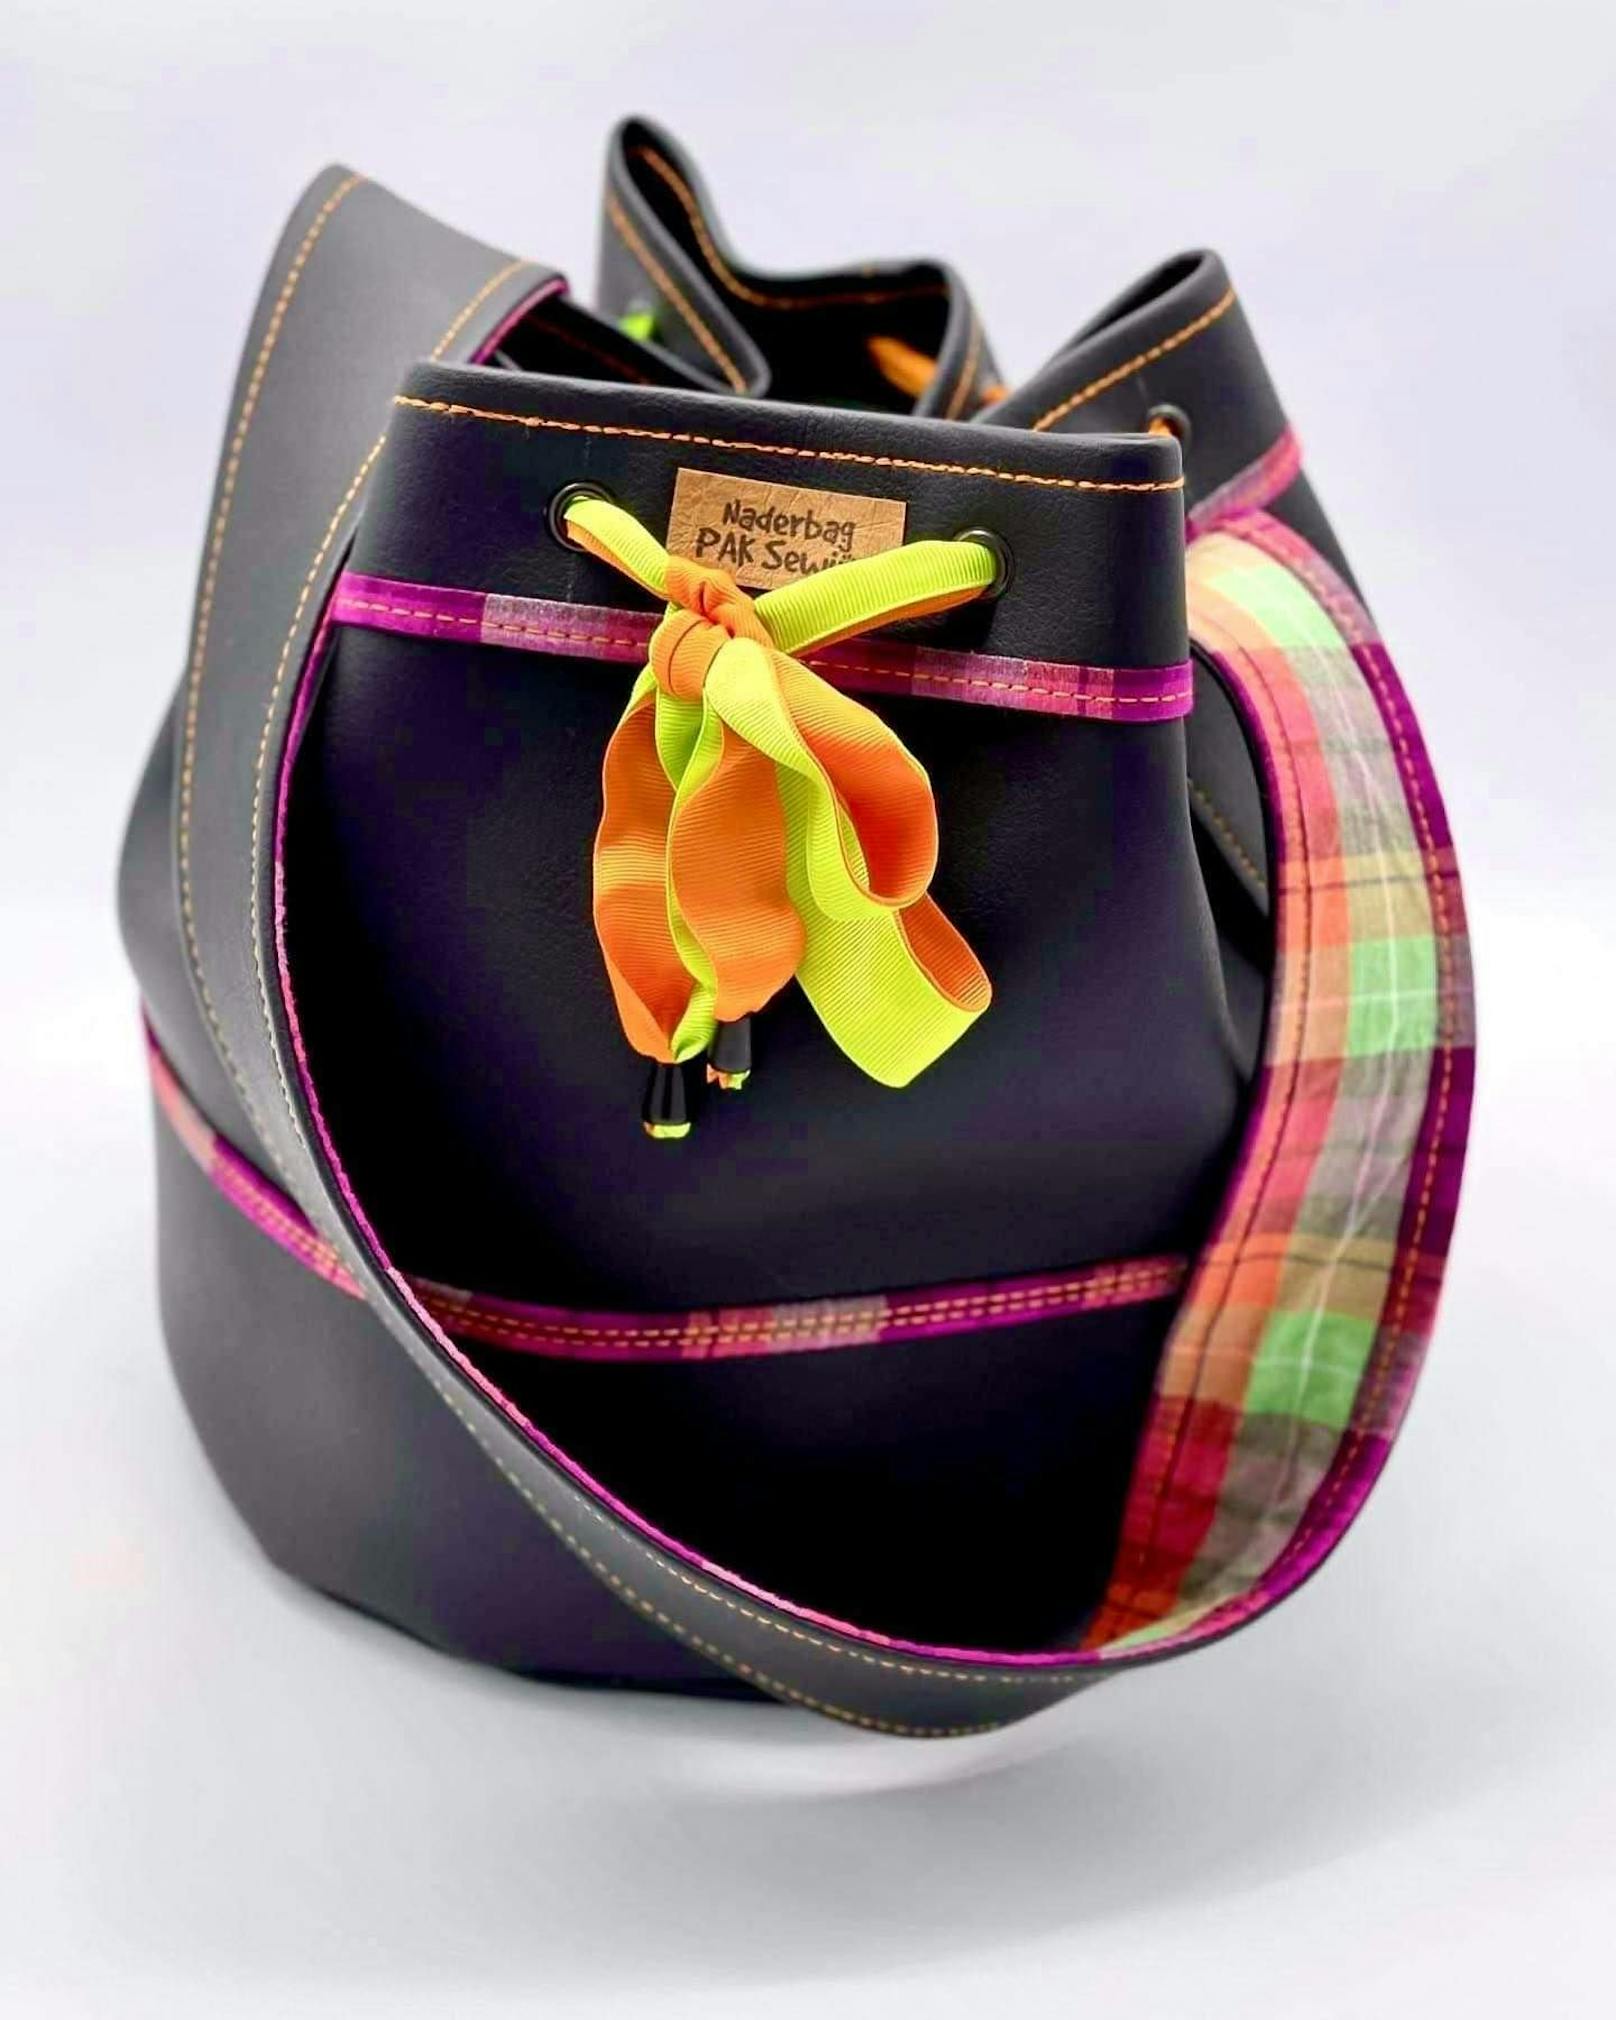 Jetzt teilnehmen und eine der handgefertigten Handtaschen Unikate von PAK Sewing gewinnen.